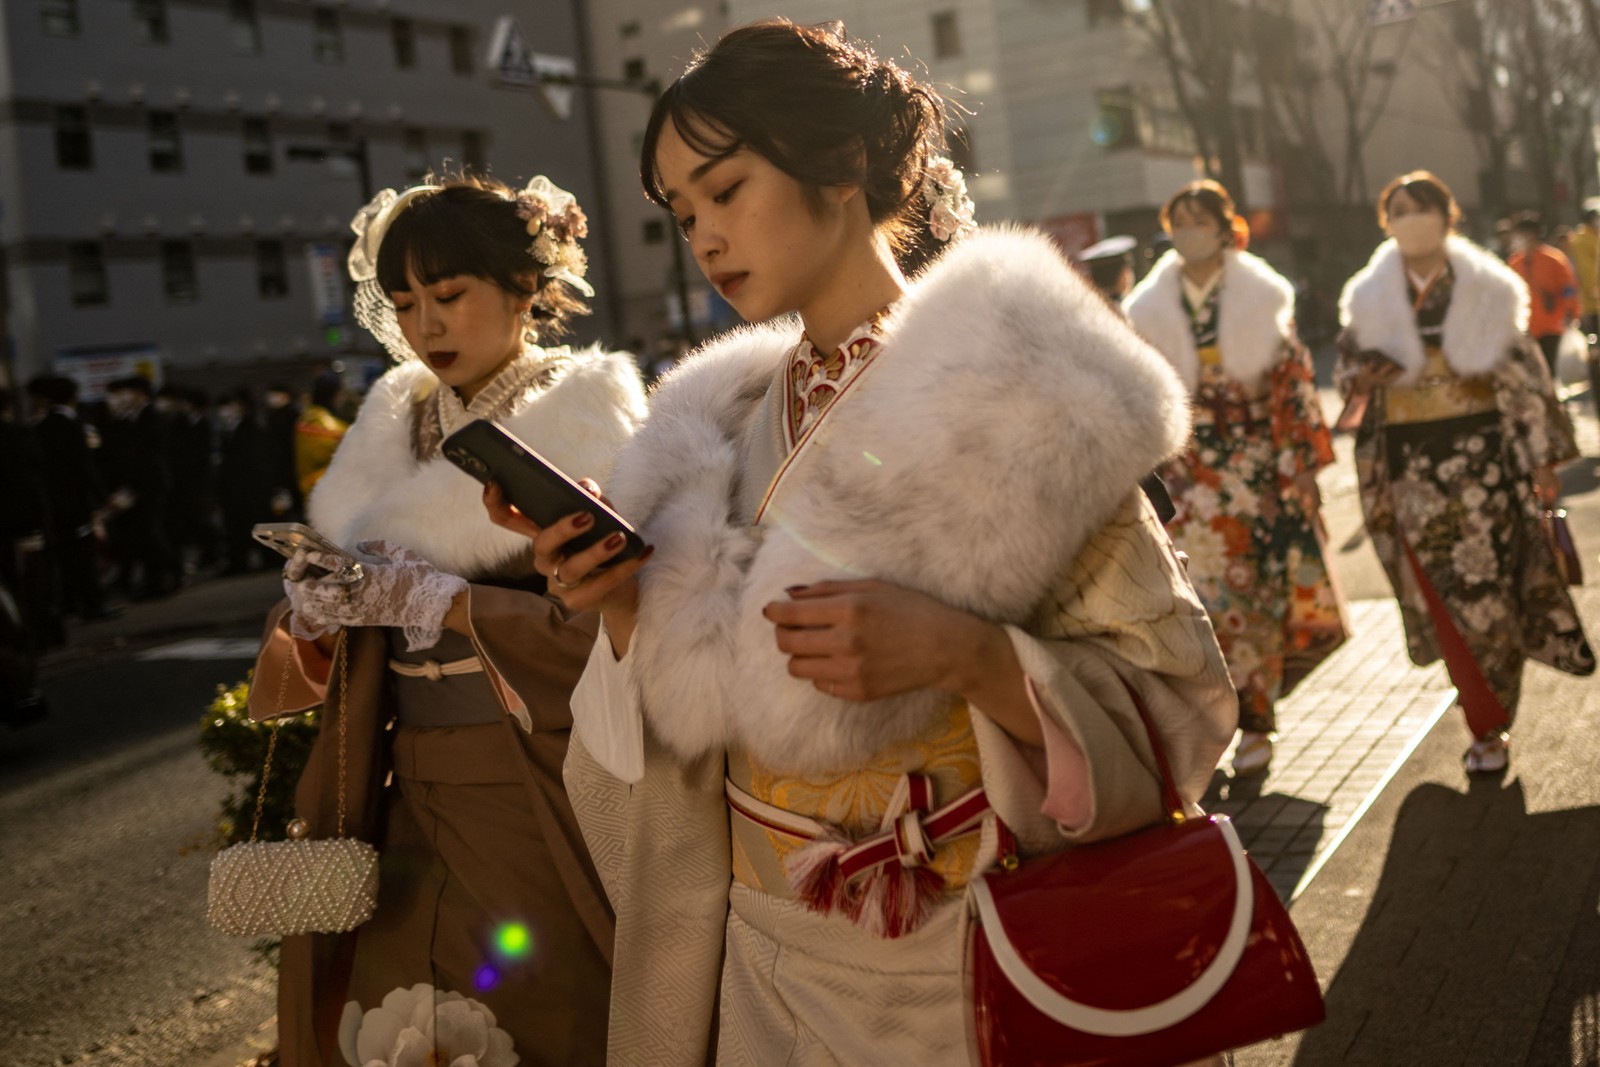 Jovens usam quimonos para marcar o "Dia da Maioridade" para homenagear as pessoas que completam 20 anos este ano para significar a idade adulta, em Yokohama, província de Kanagawa, no Japão. — Foto: Philip FONG / AFP